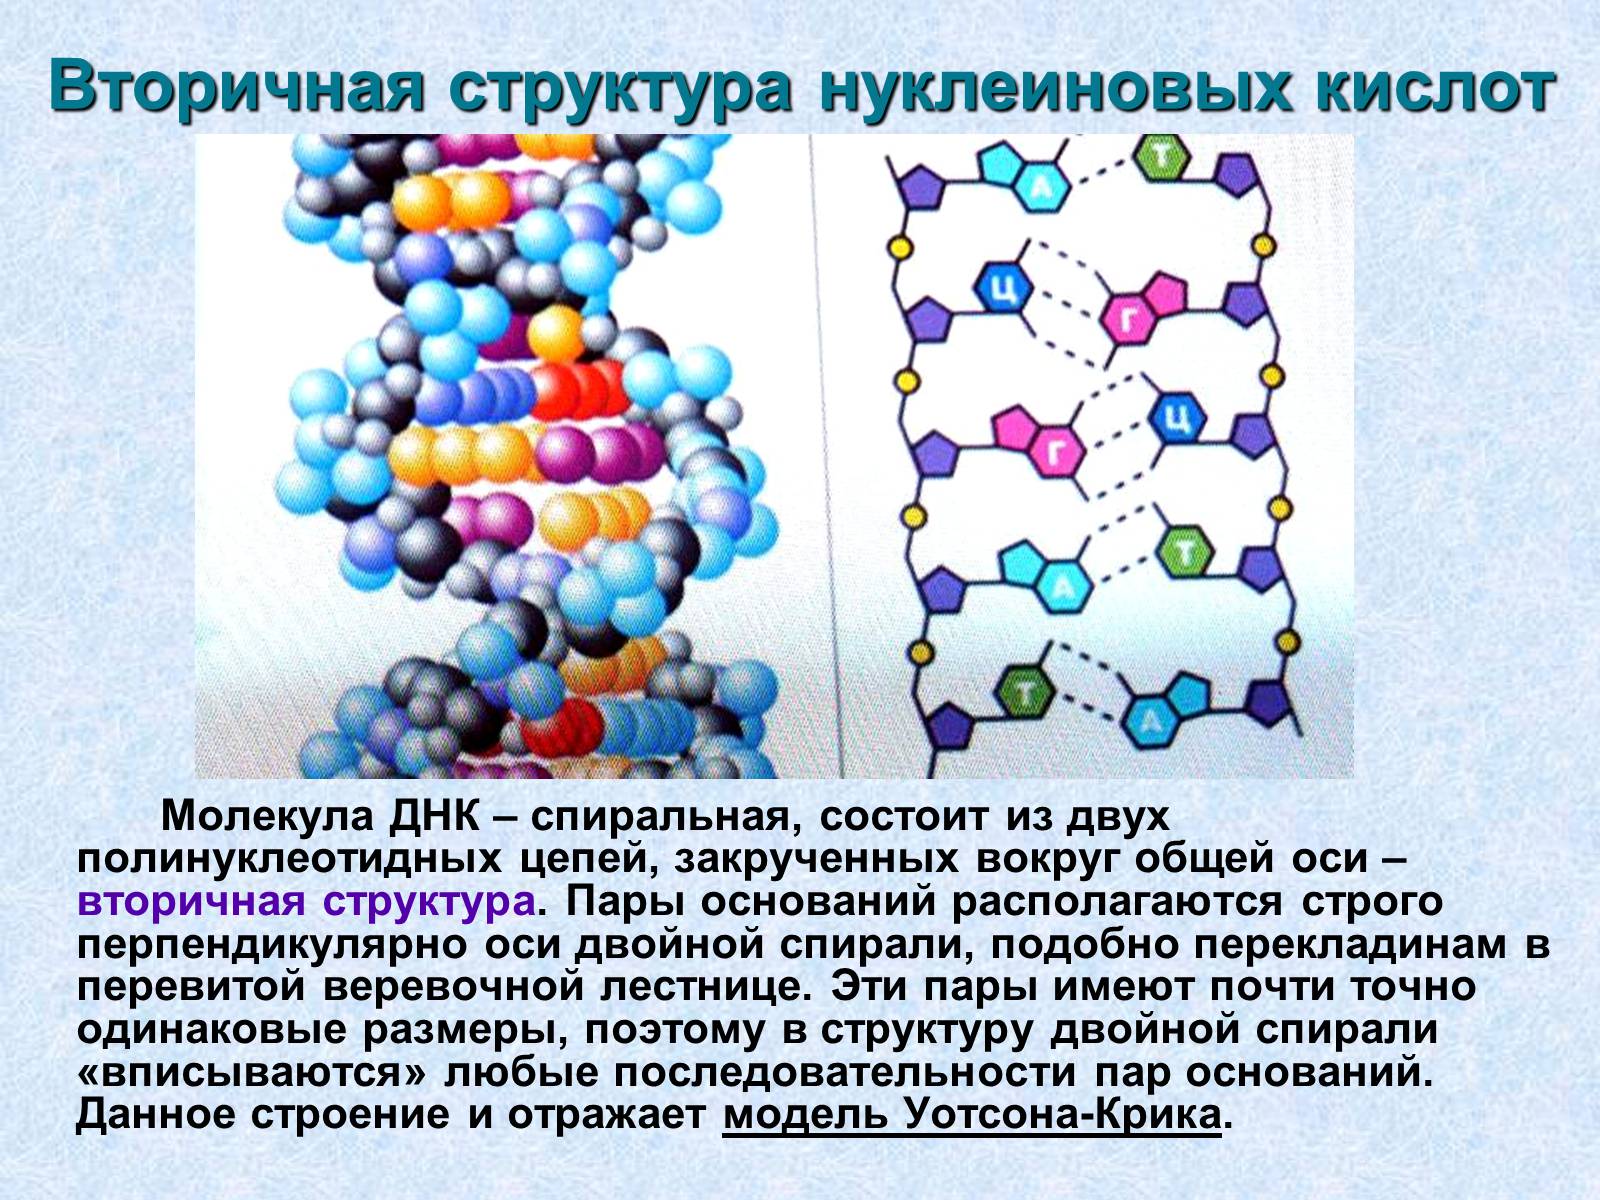 Нуклеиновые кислоты состоят из молекул. Первичная и вторичная структура нуклеиновых кислот. Первичная вторичная и третичная структура нуклеиновых кислот. Первичная структура нуклеиновых кислот рисунок. Первичная и вторичная структура нуклеиновых кислот связи.